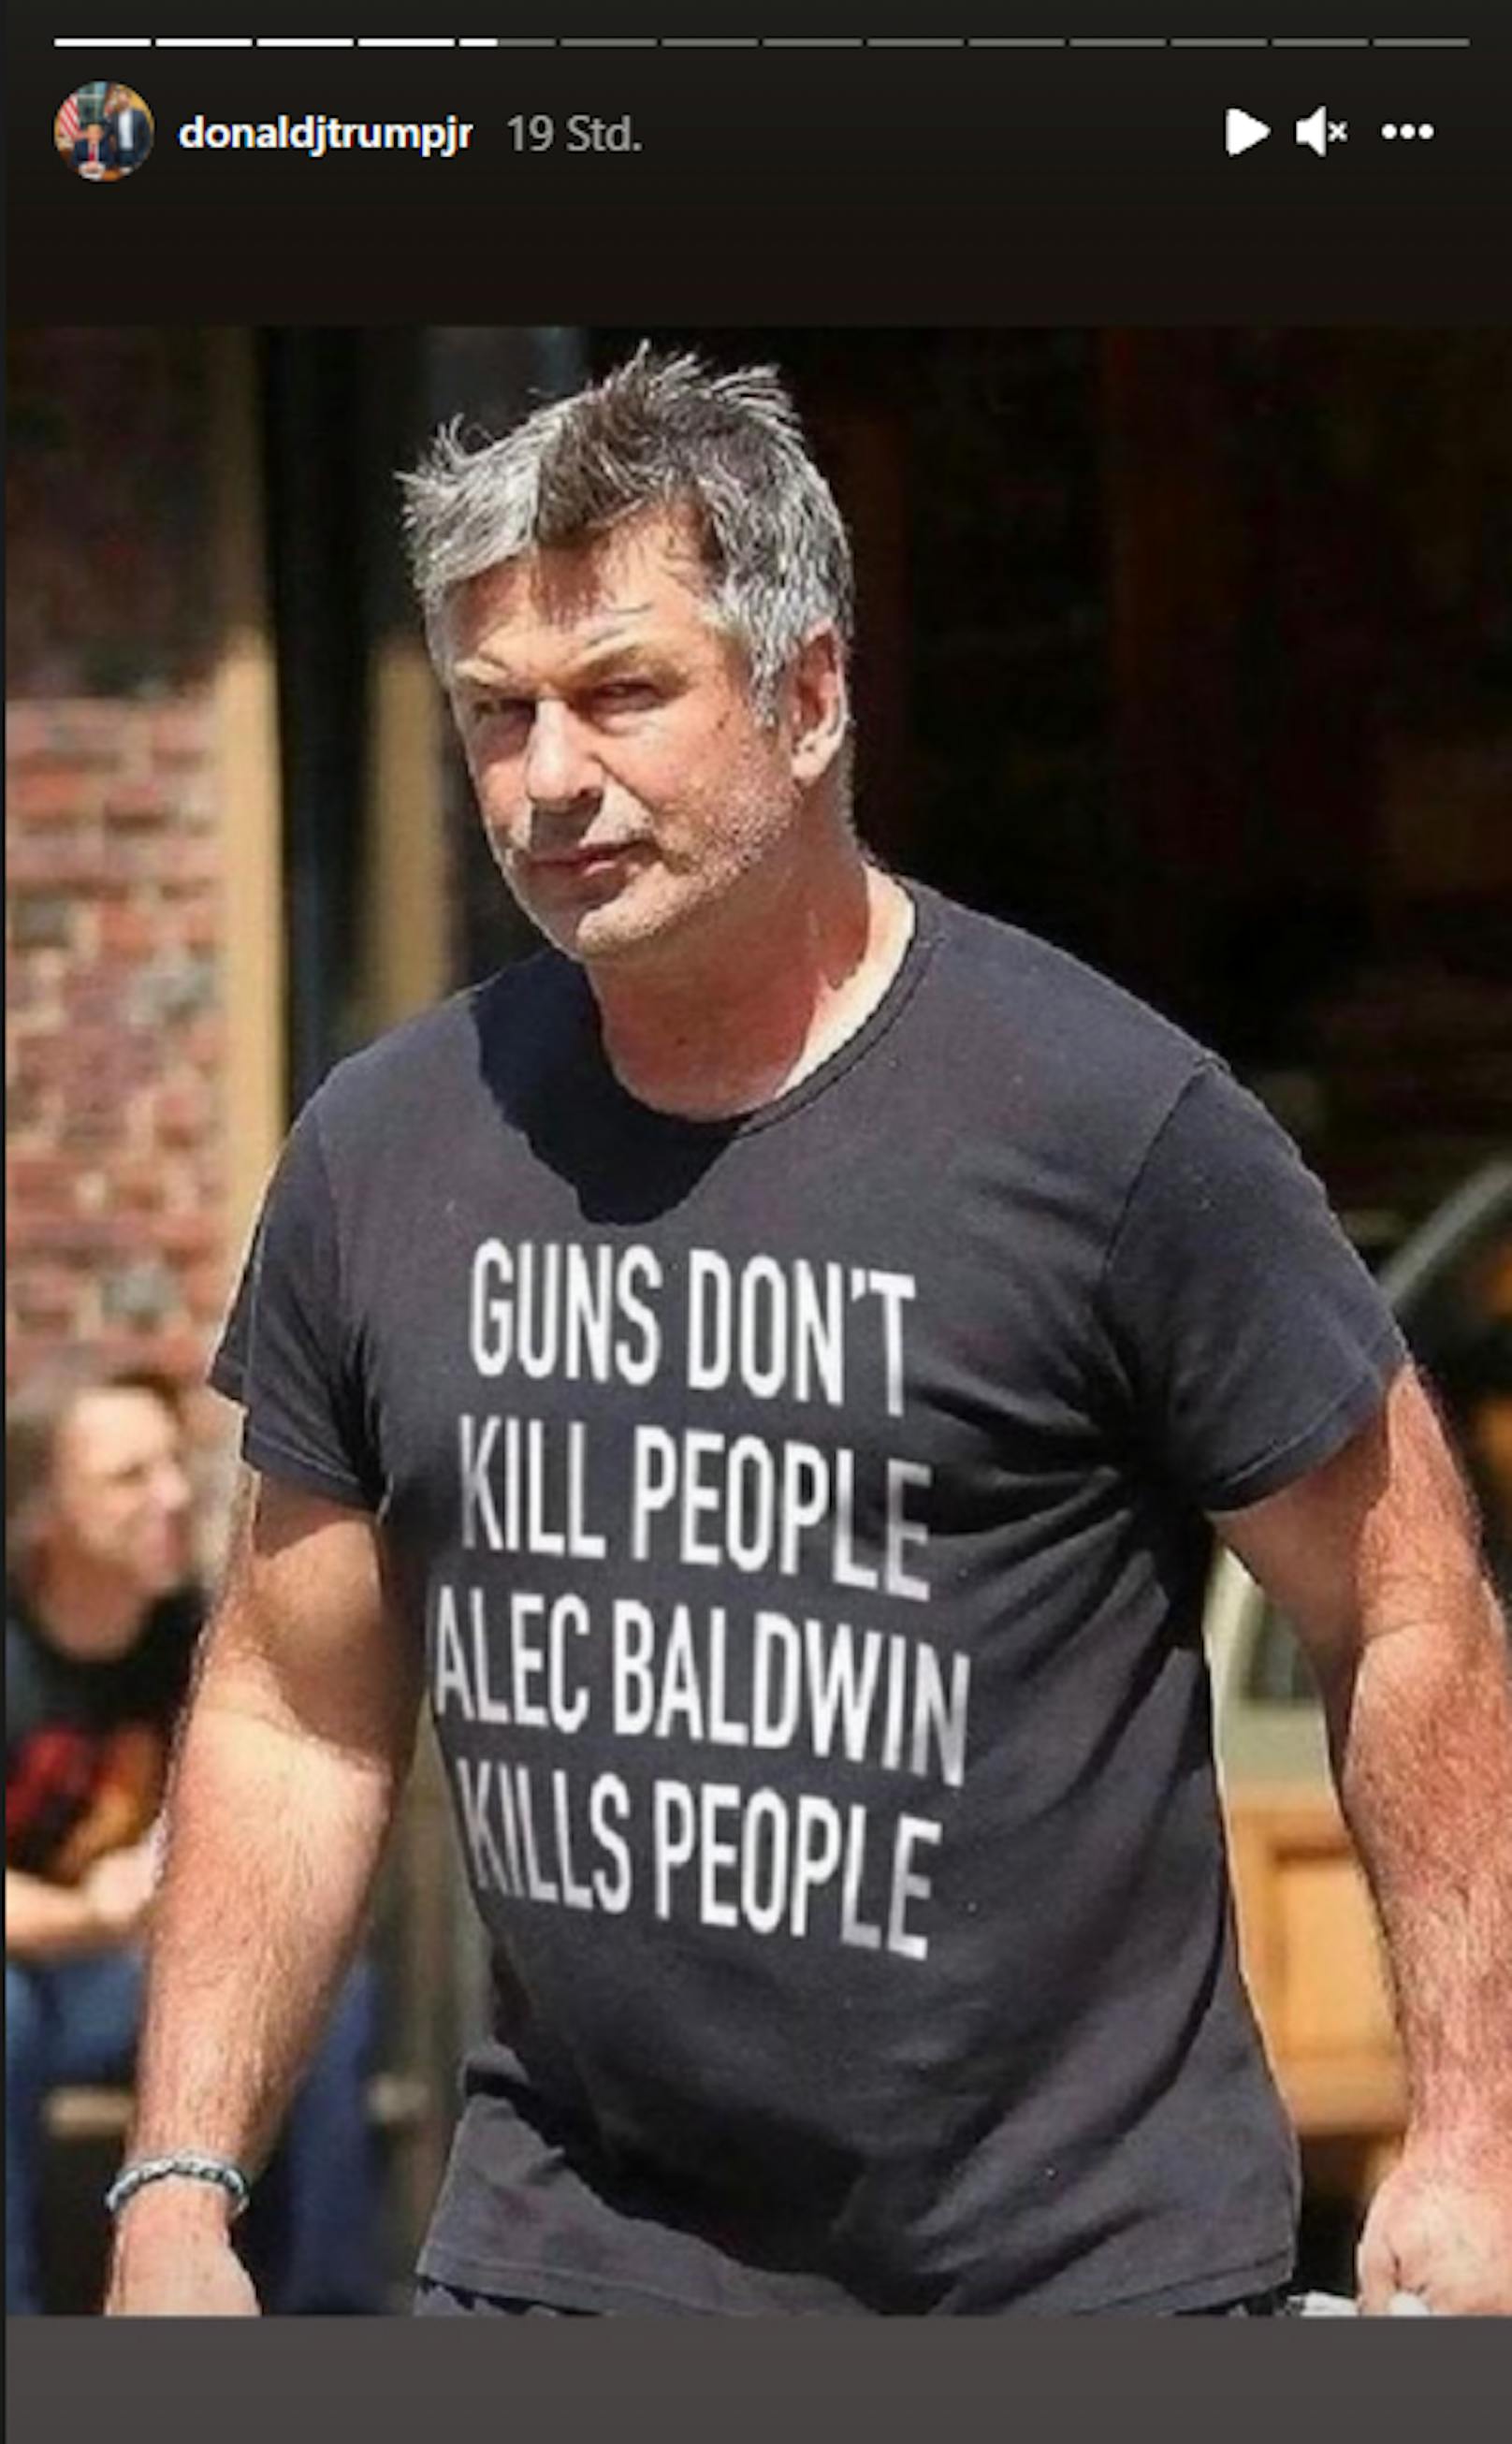 In einem Instagram-Post teilt Trump Jr. ein mit Photoshop bearbeitetes Bild von Alec Baldwin, der ein T-Shirt mit der Aufschrift trägt: "Schusswaffen töten keine Menschen, Alec Baldwin tötet Menschen".